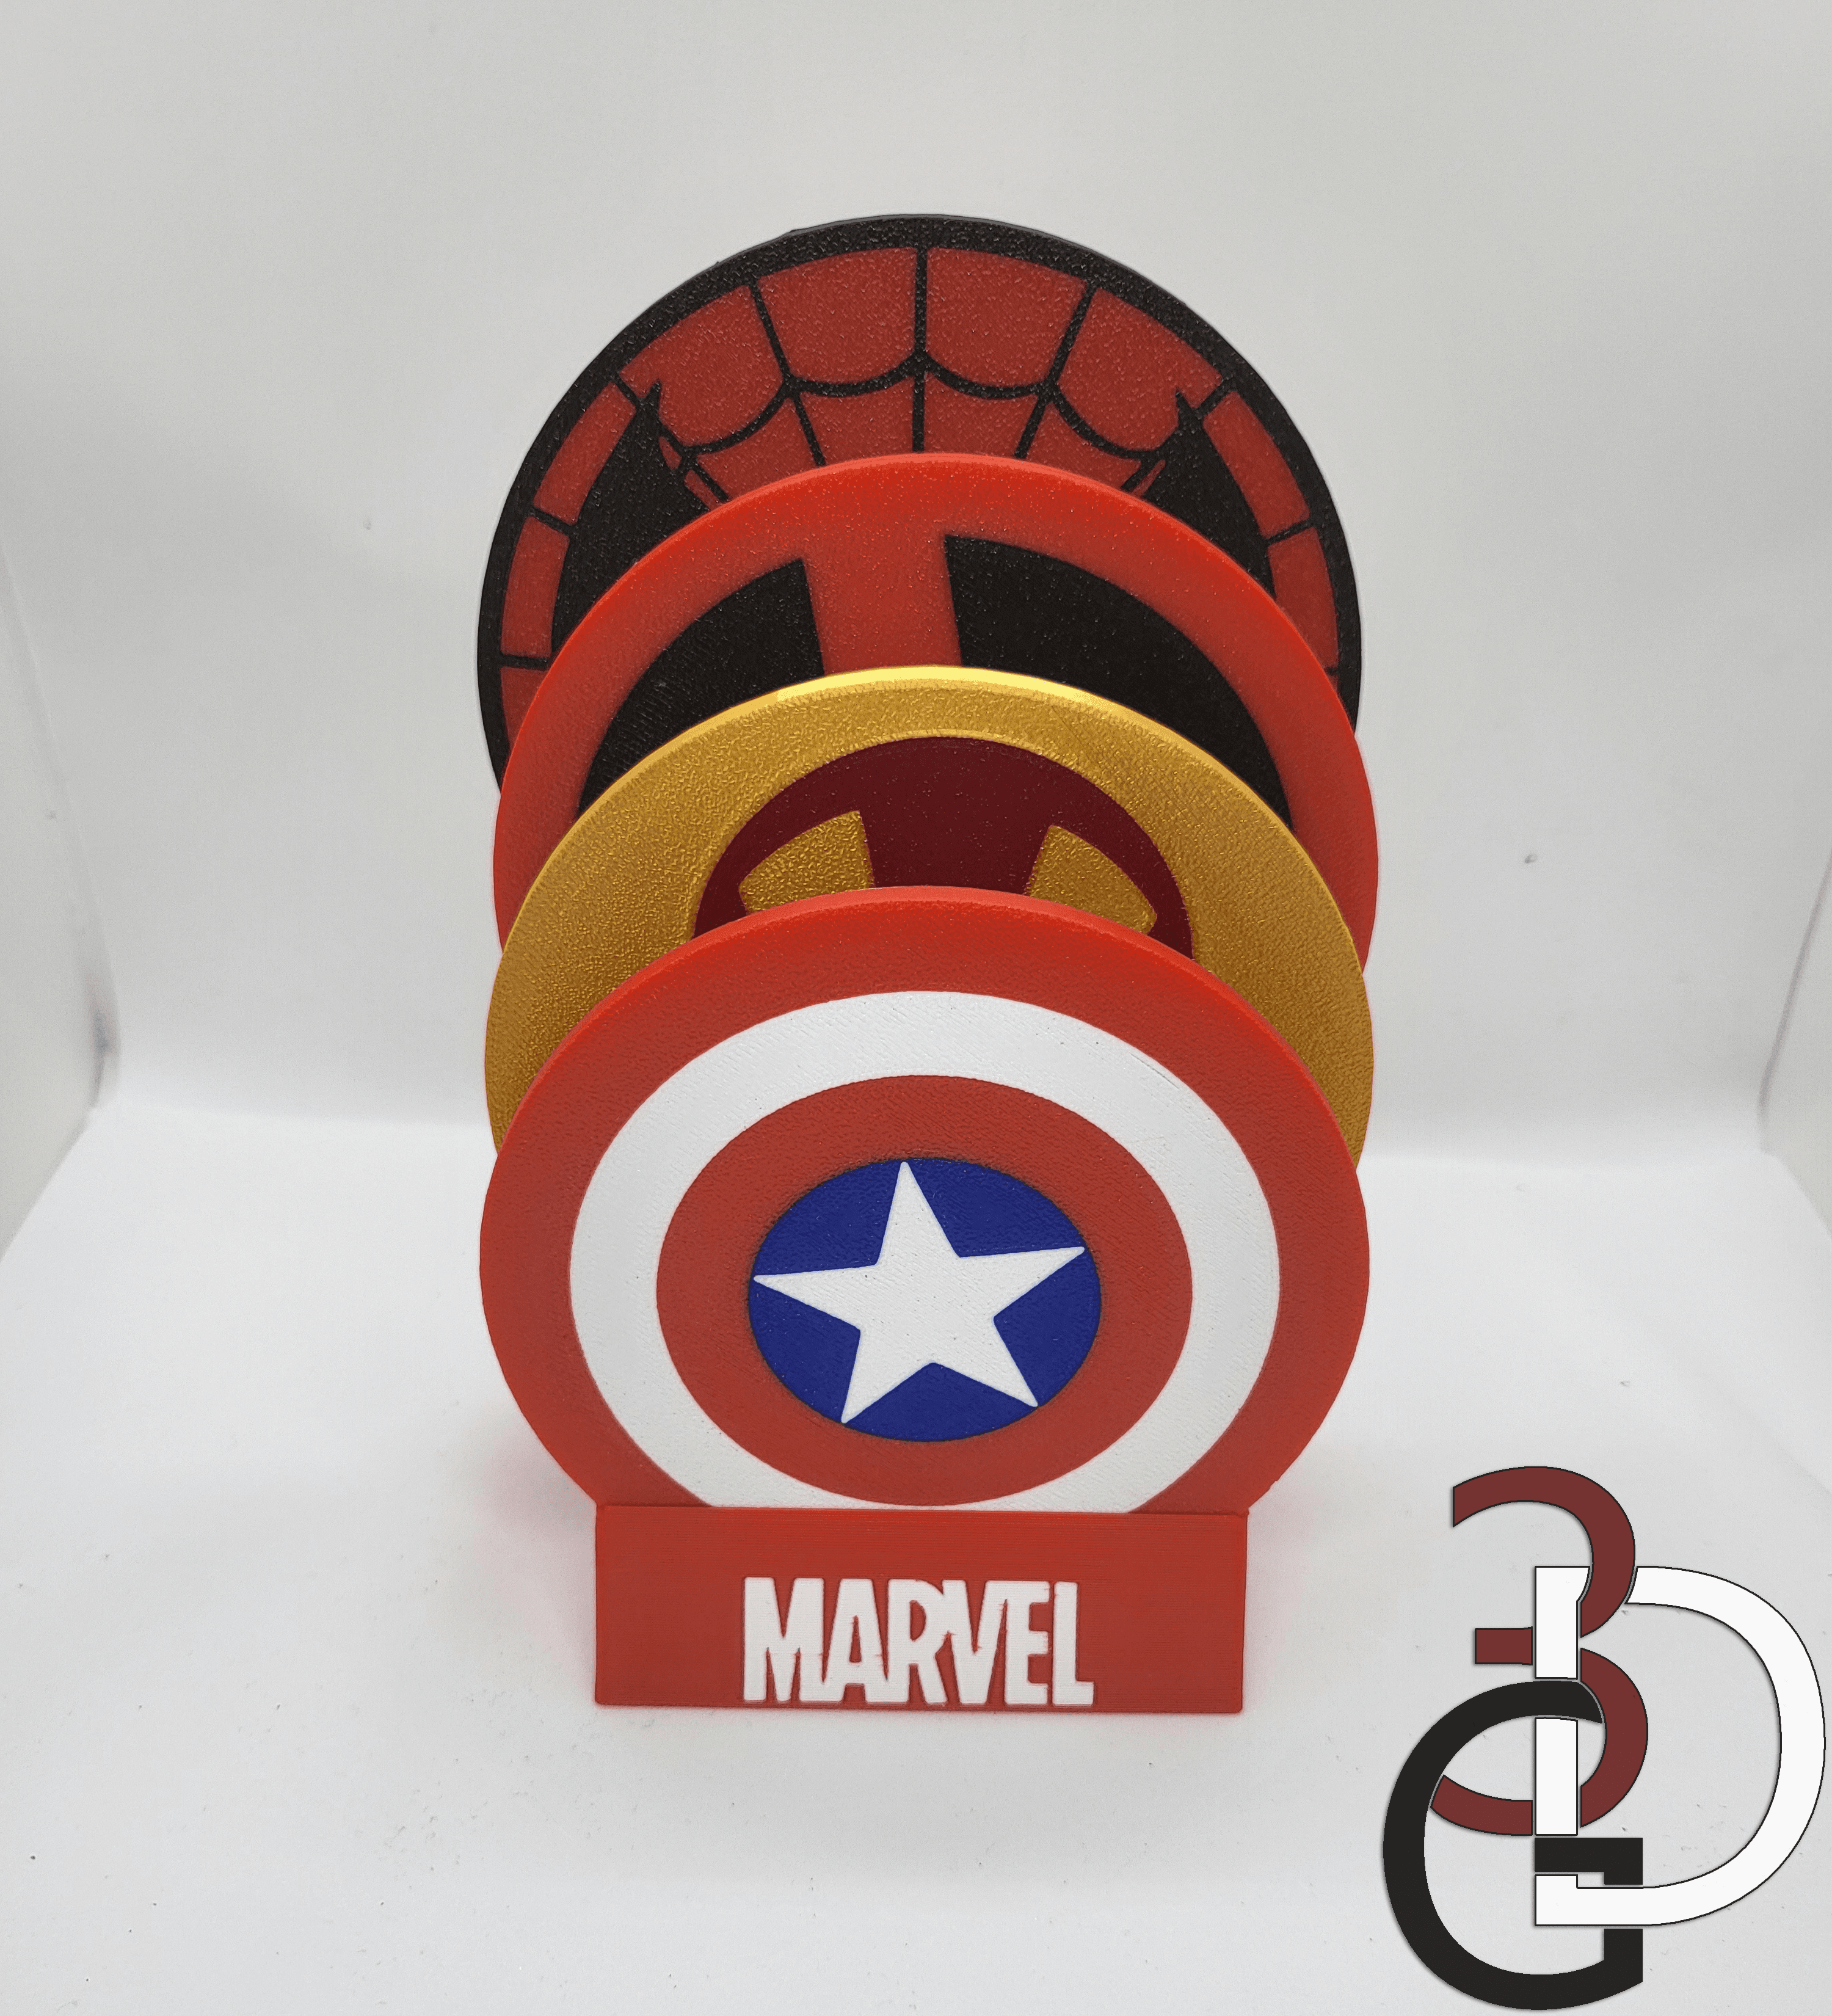 Marvel themed coaster holder 3d model